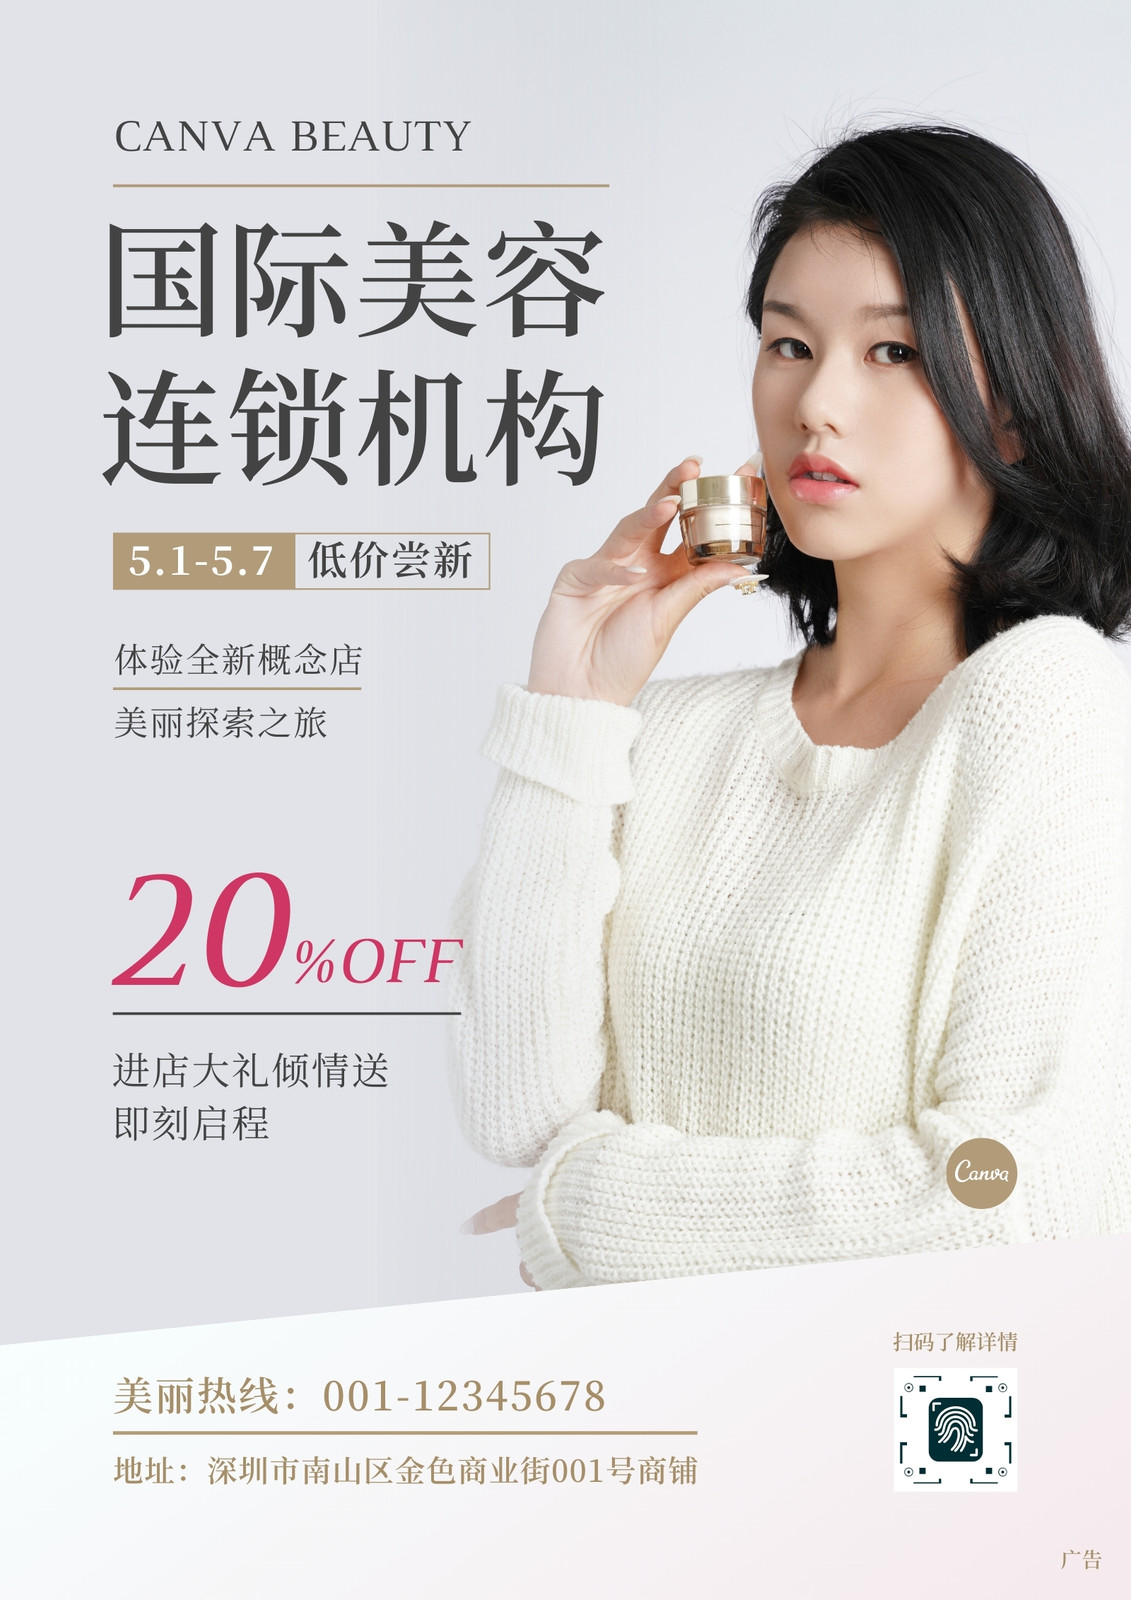 灰金色国际美容连锁机构美丽女神代言人照片美容促销中文传单